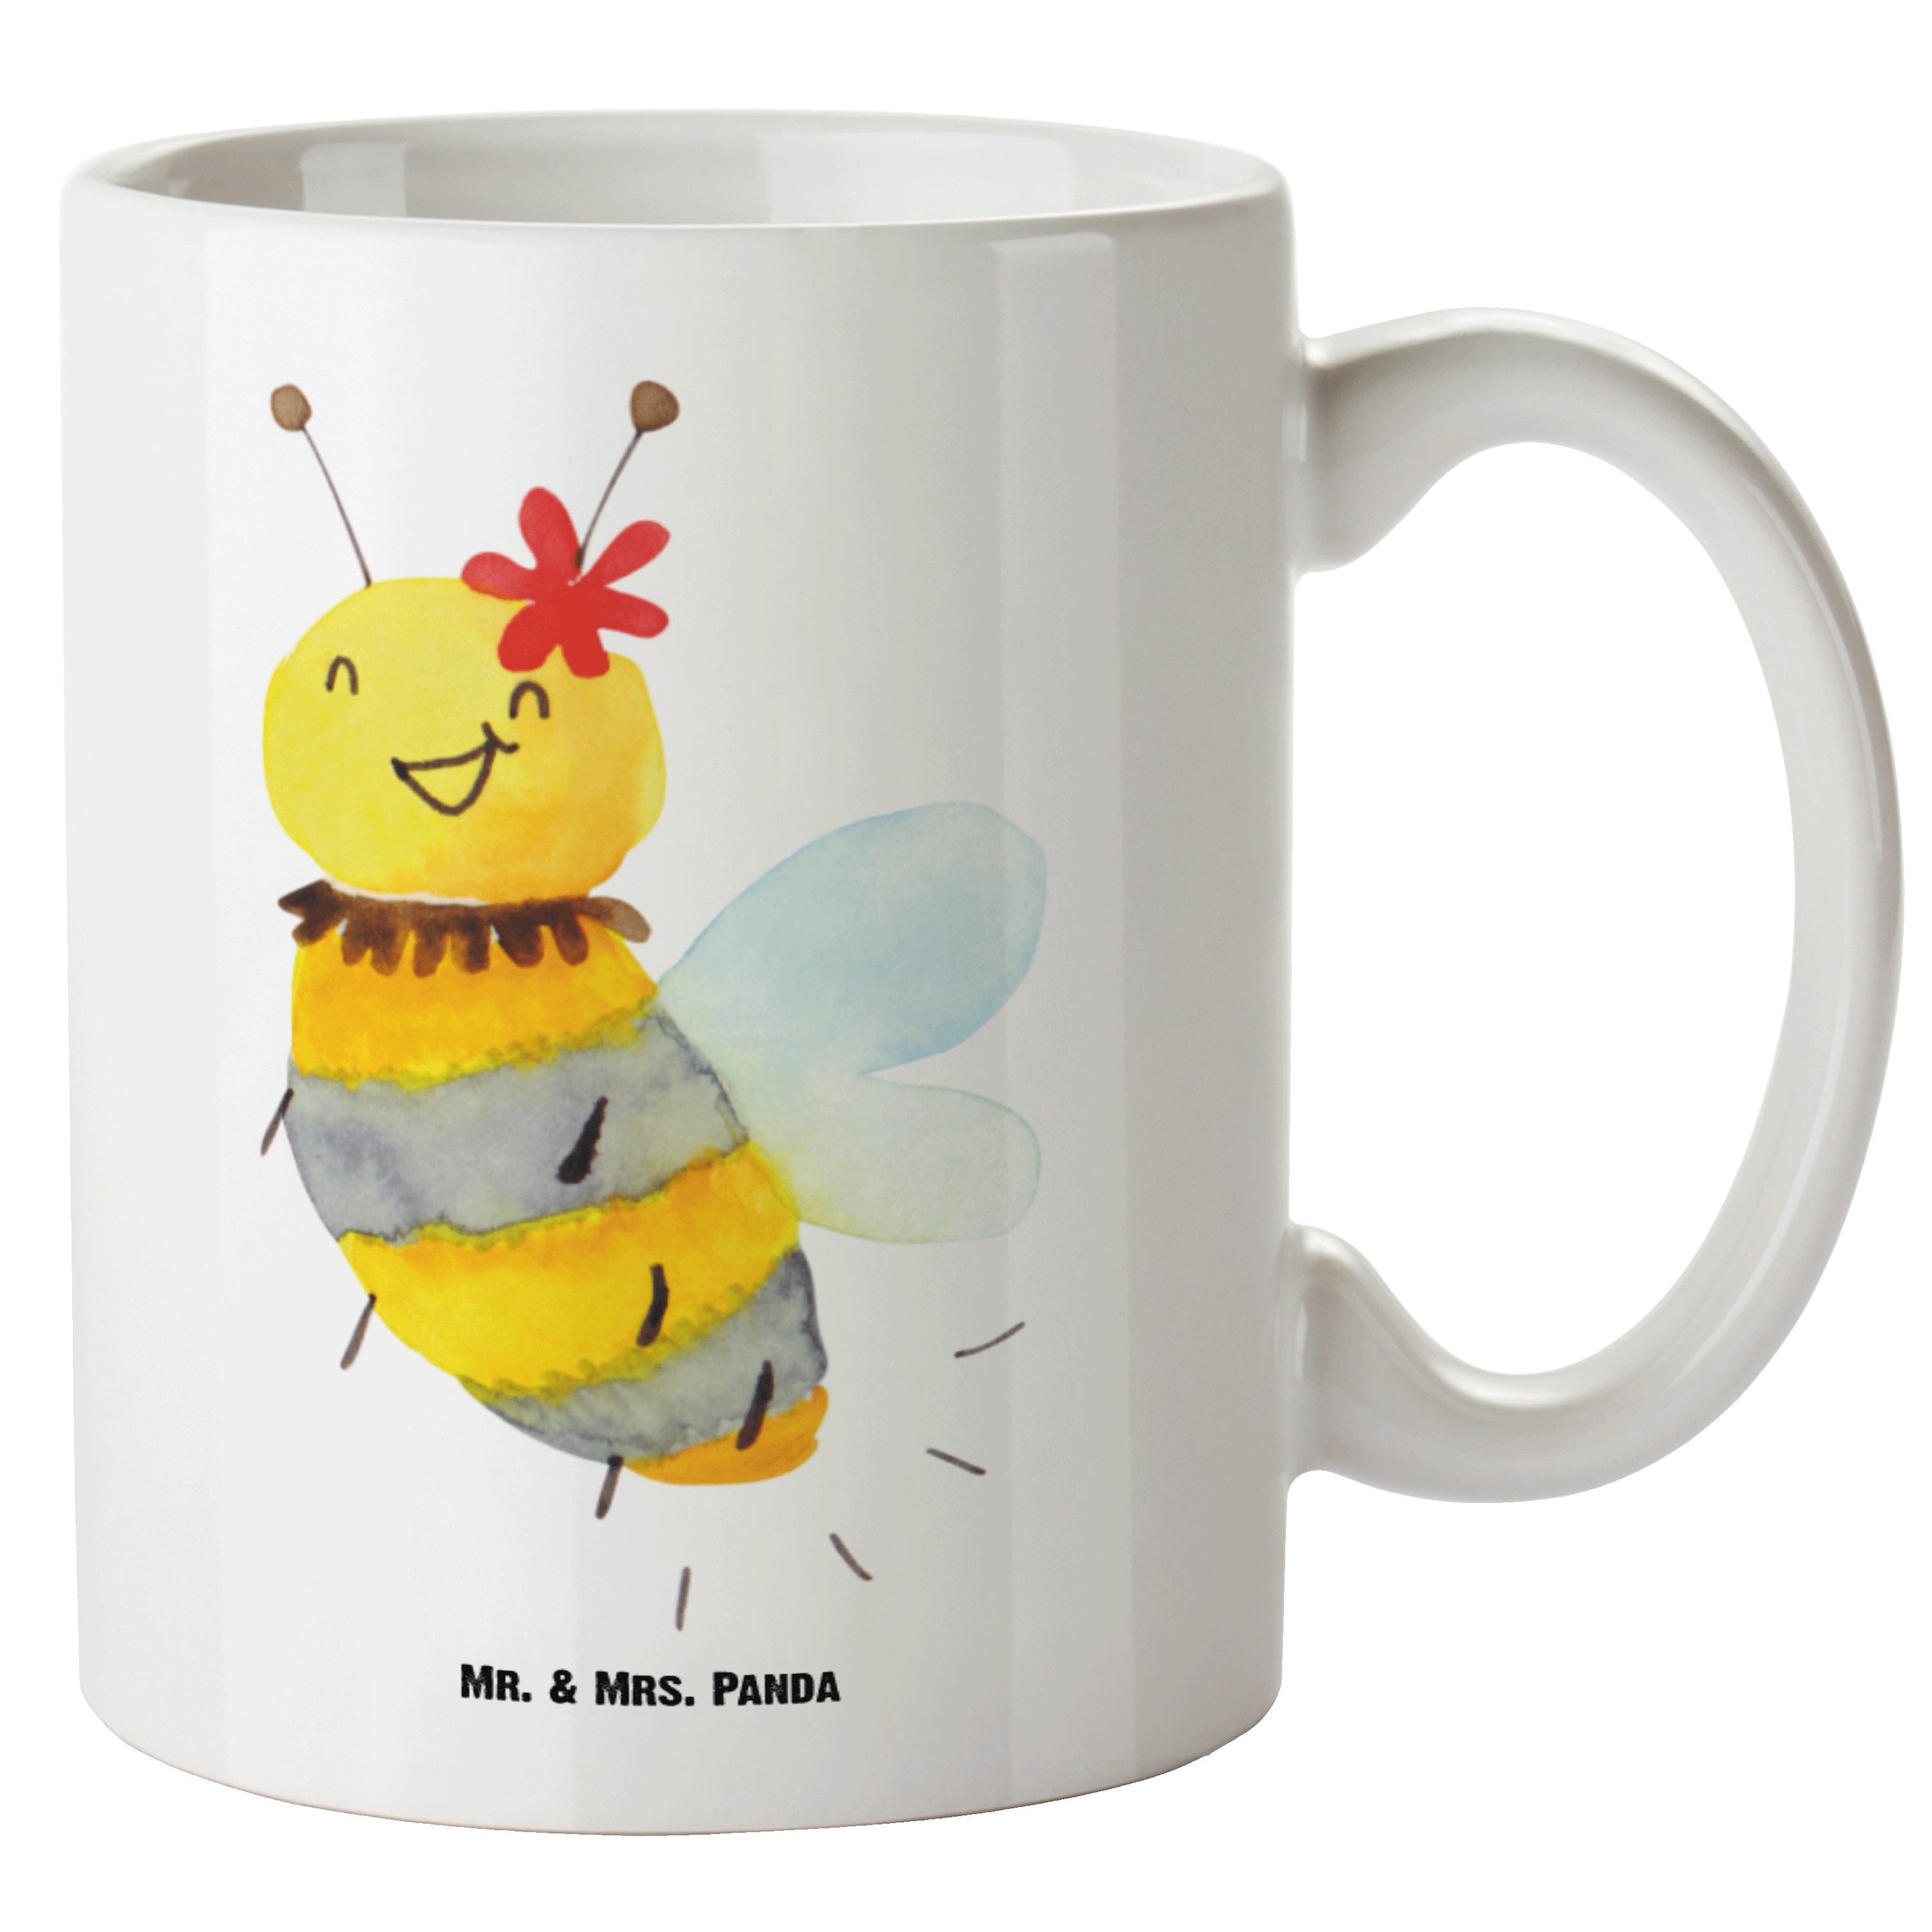 Mr. & Mrs. Panda Tasse Biene Blume - Weiß - Geschenk, Groß, Große Tasse, XL Becher, Hummel, XL Tasse Keramik